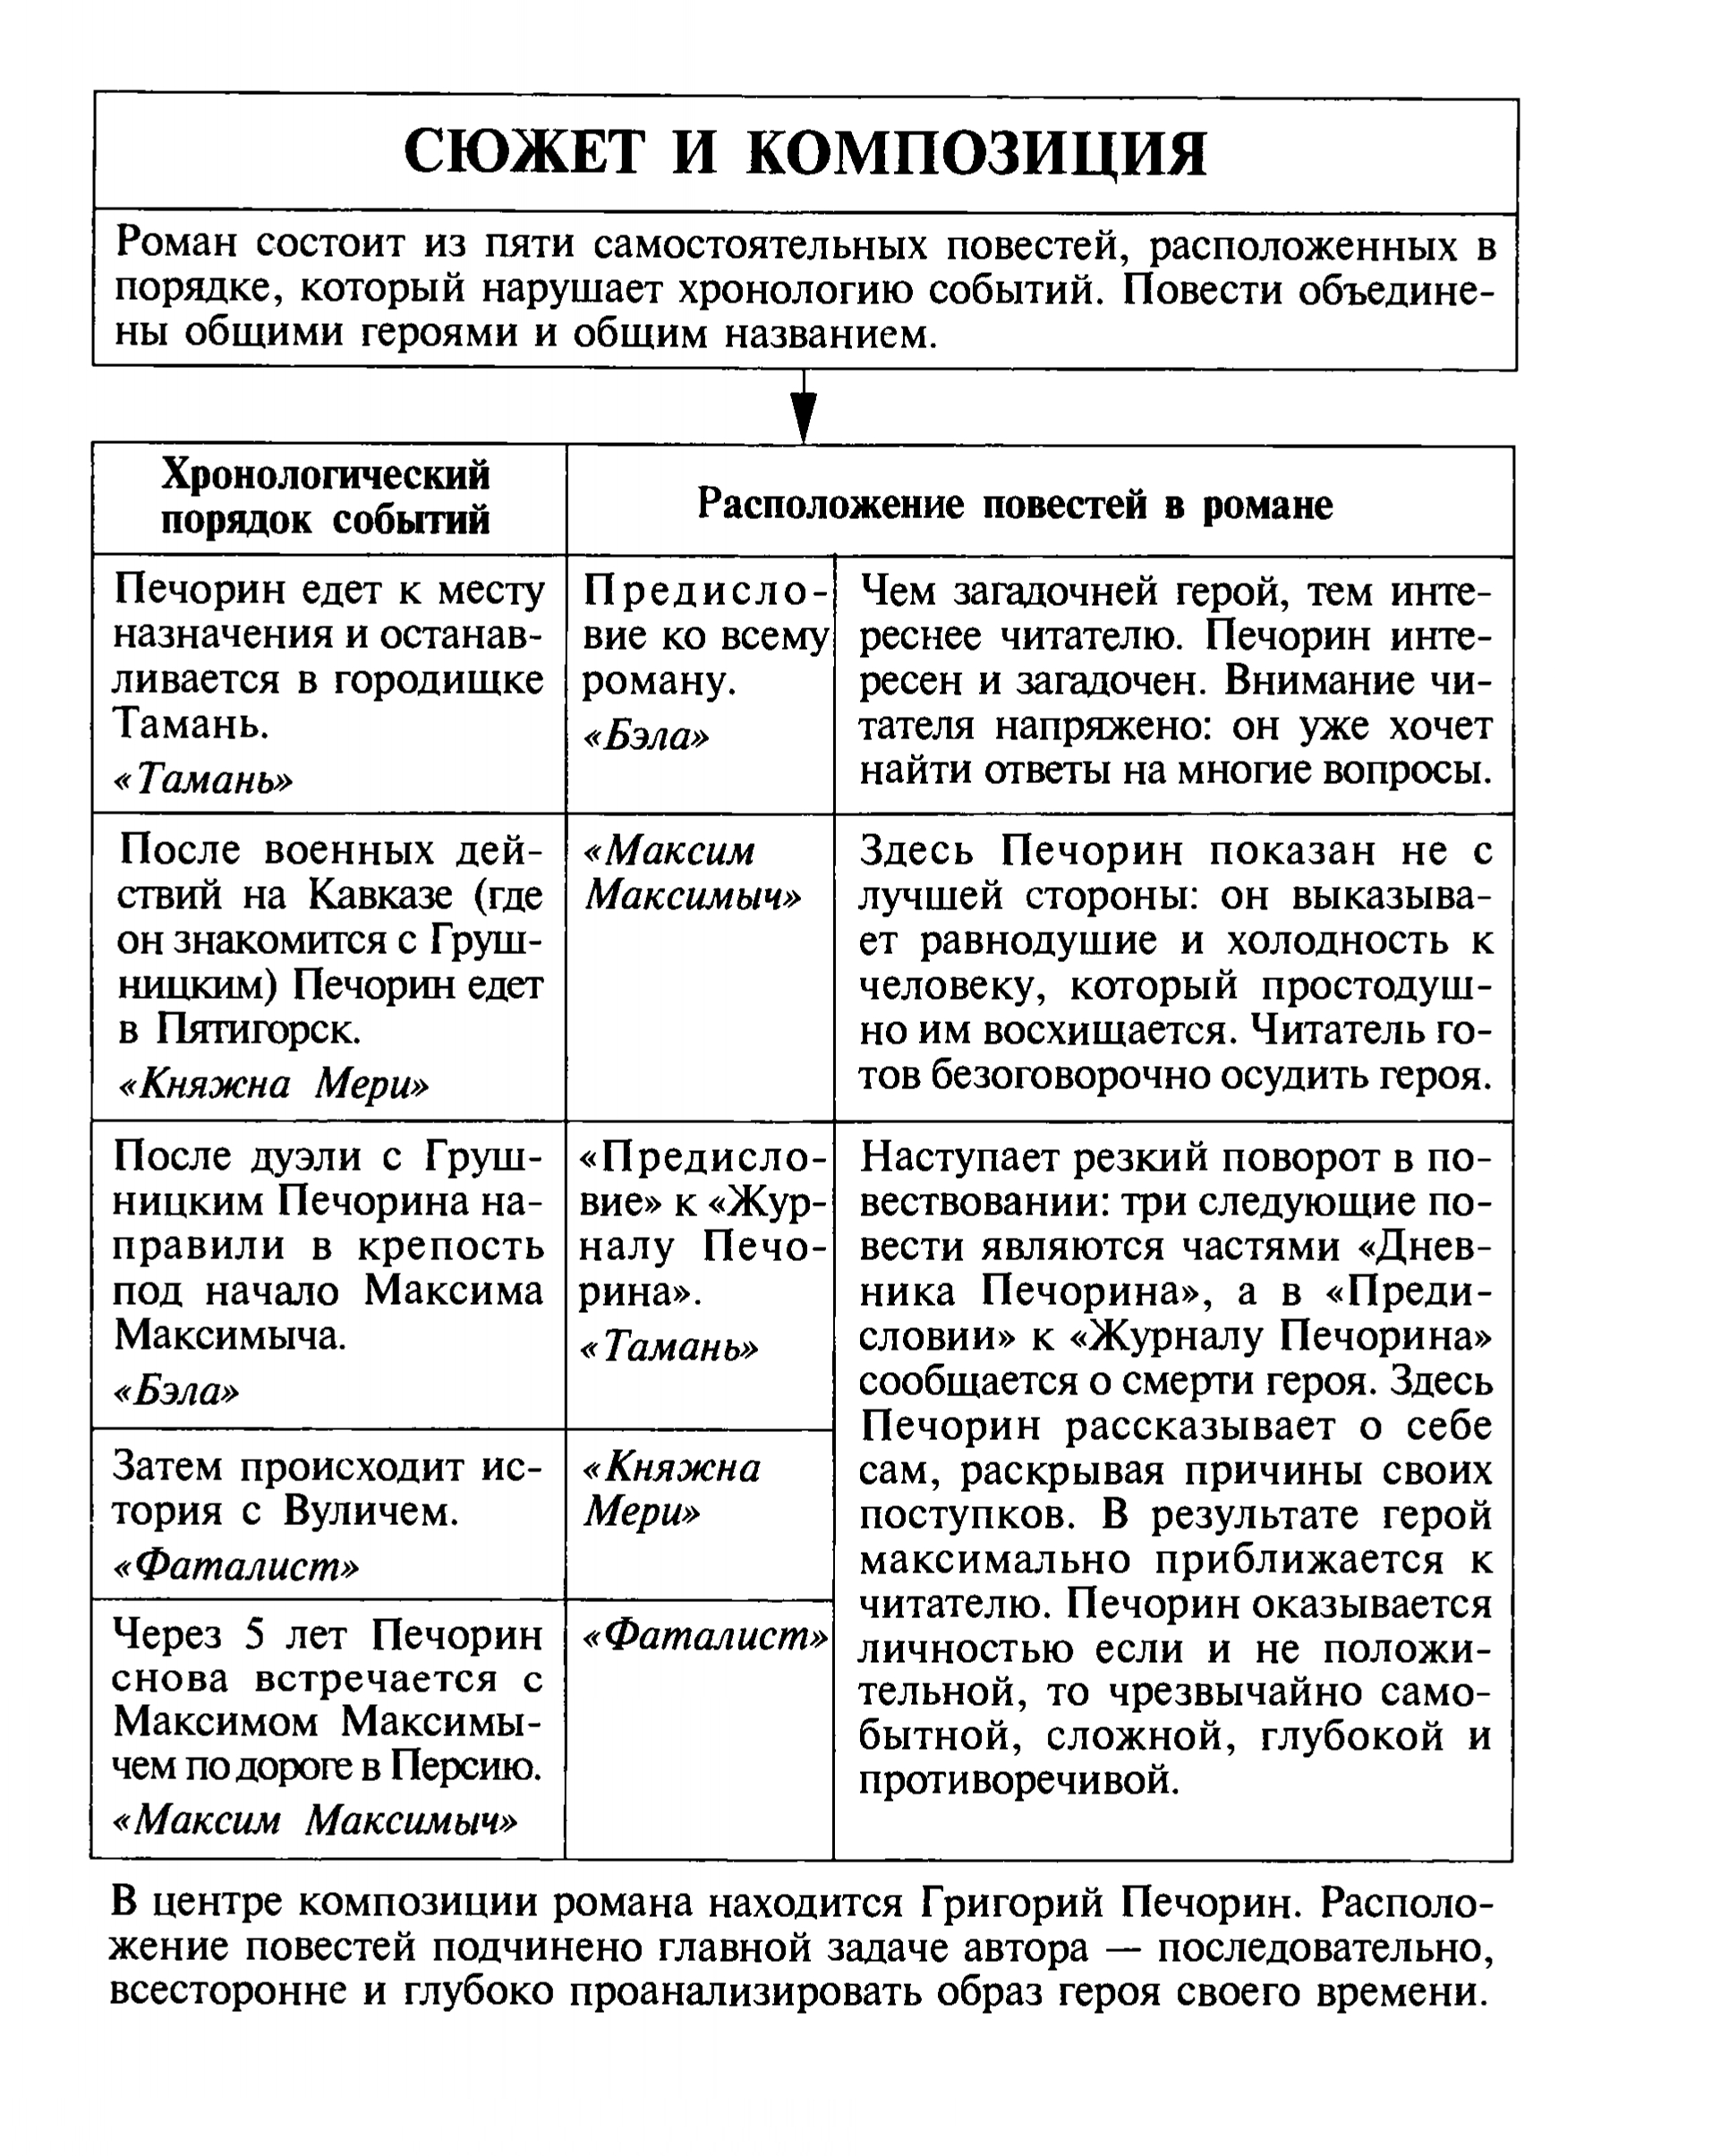 Сюжет и композиция романа (таблица)